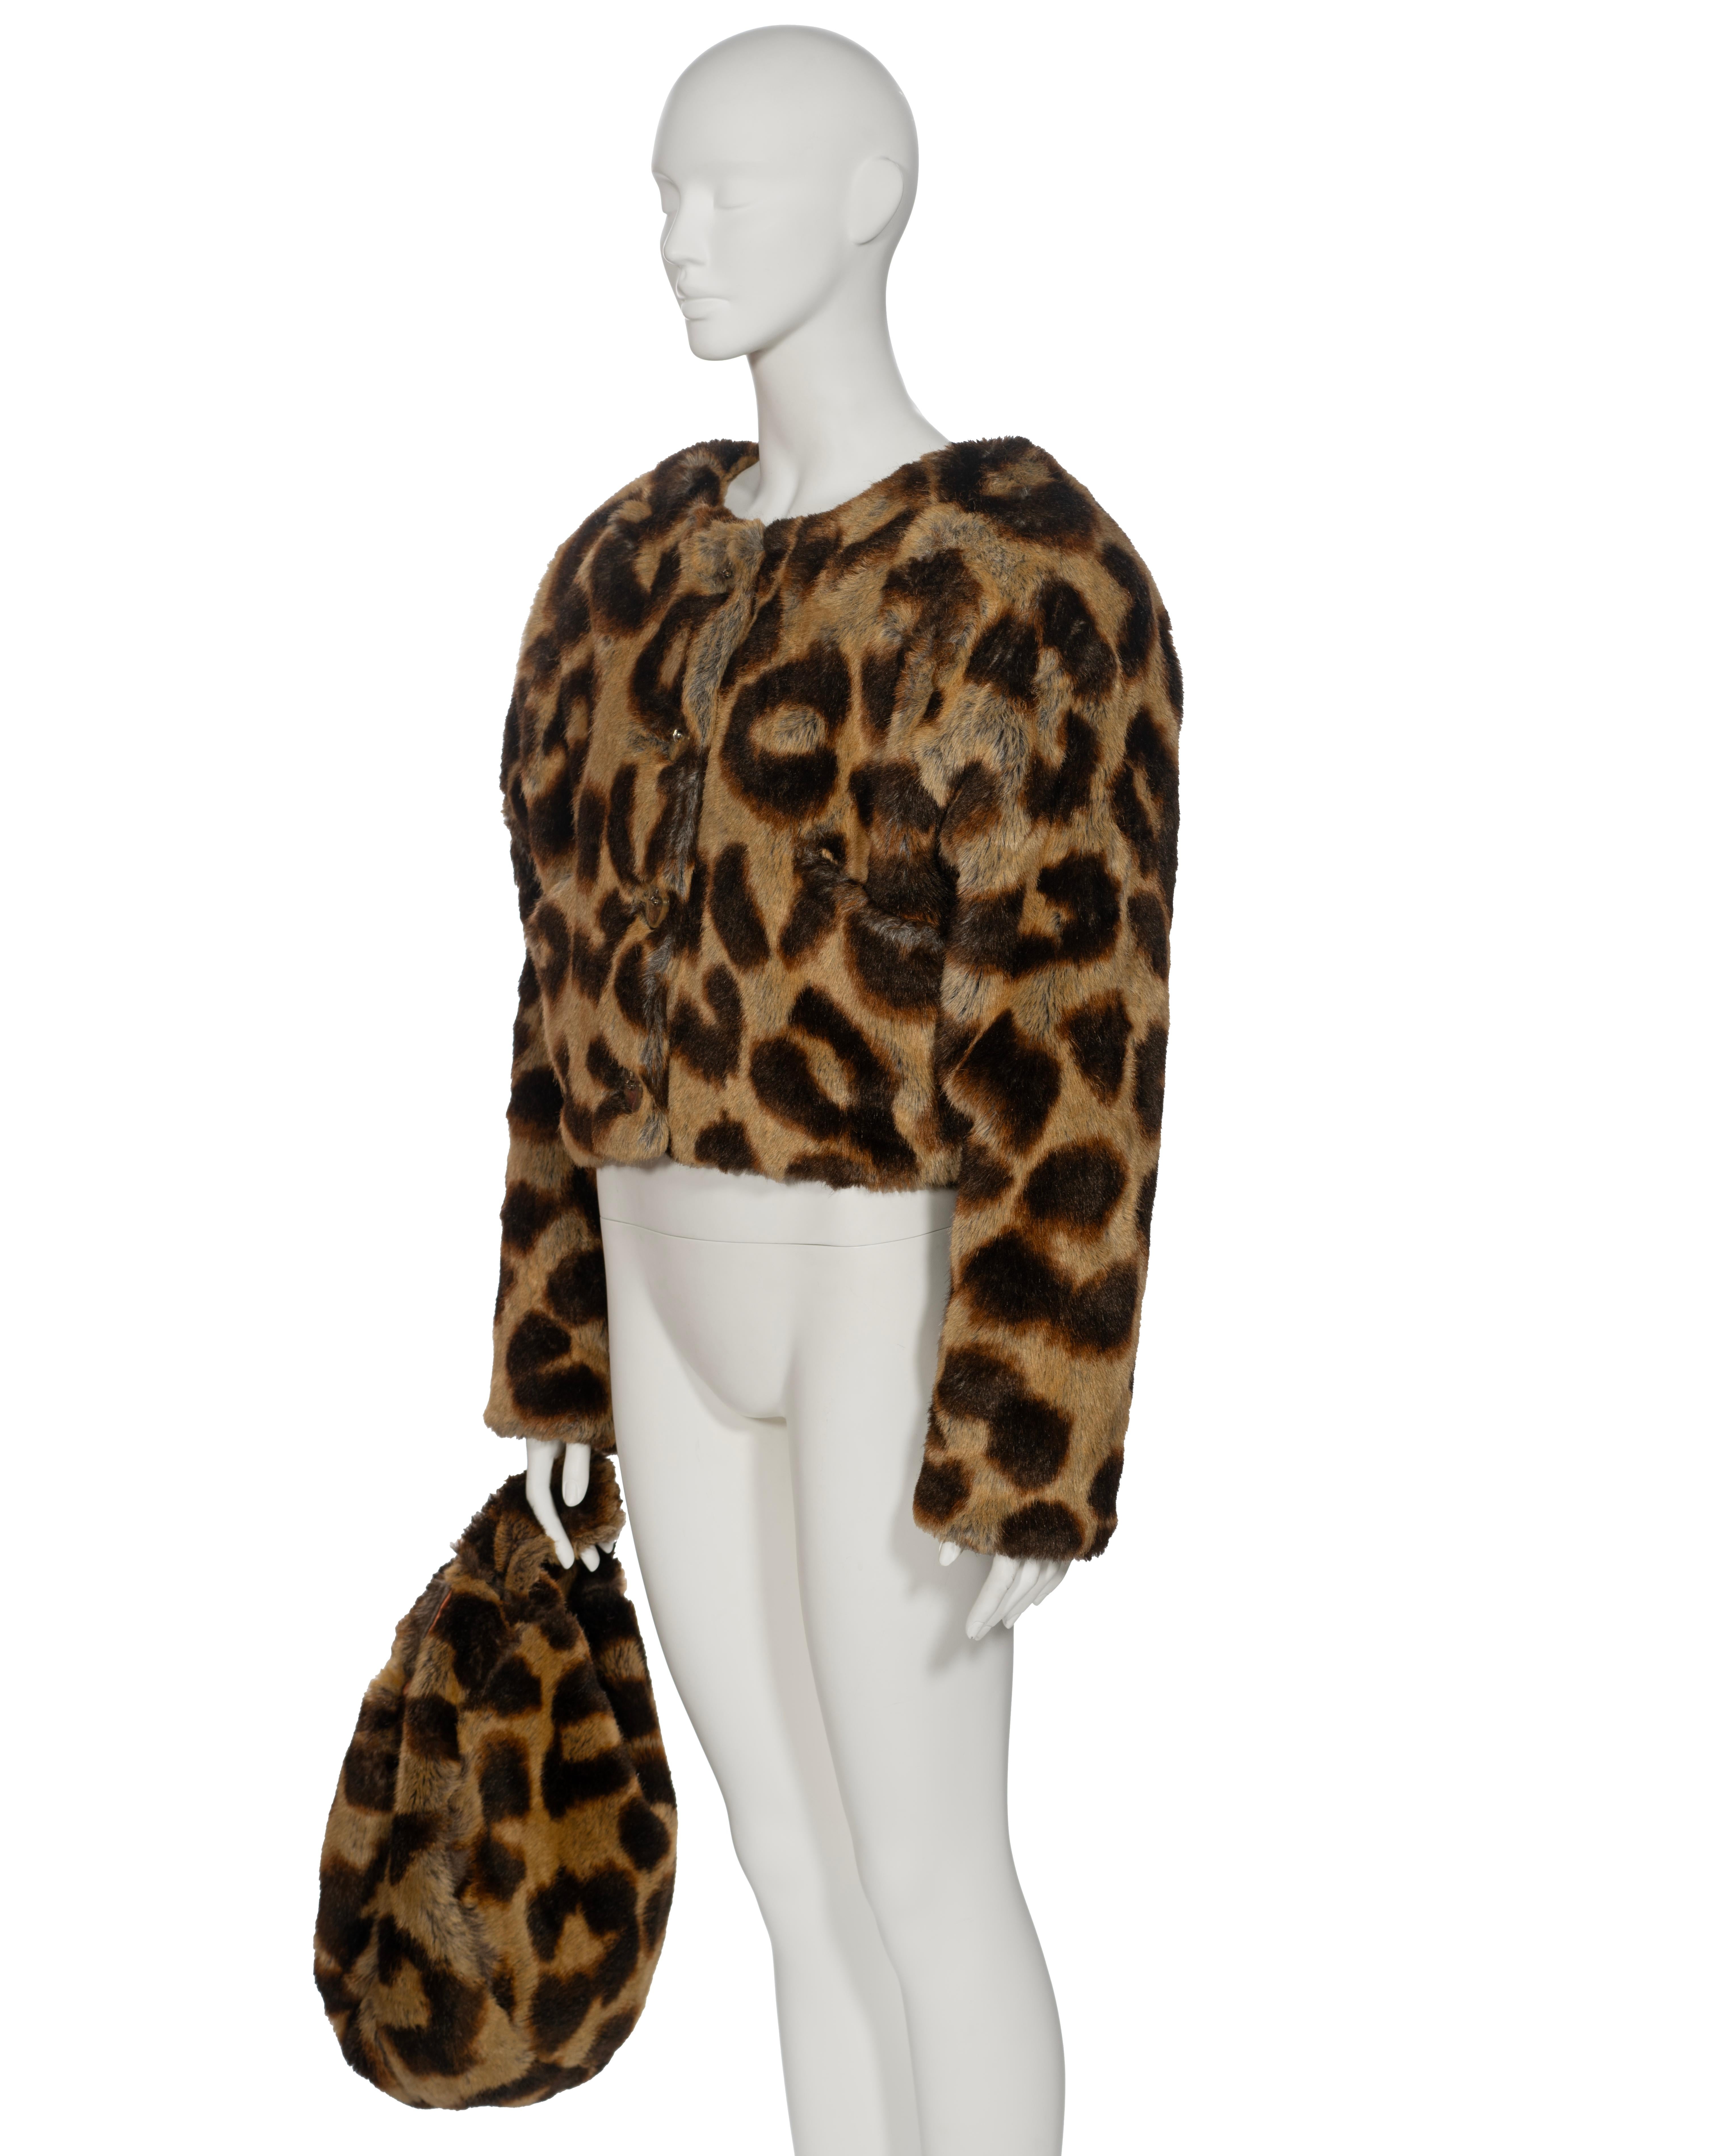 Vivienne Westwood Leopard Print Faux Fur Jacket and Bag Set, fw 1992 5